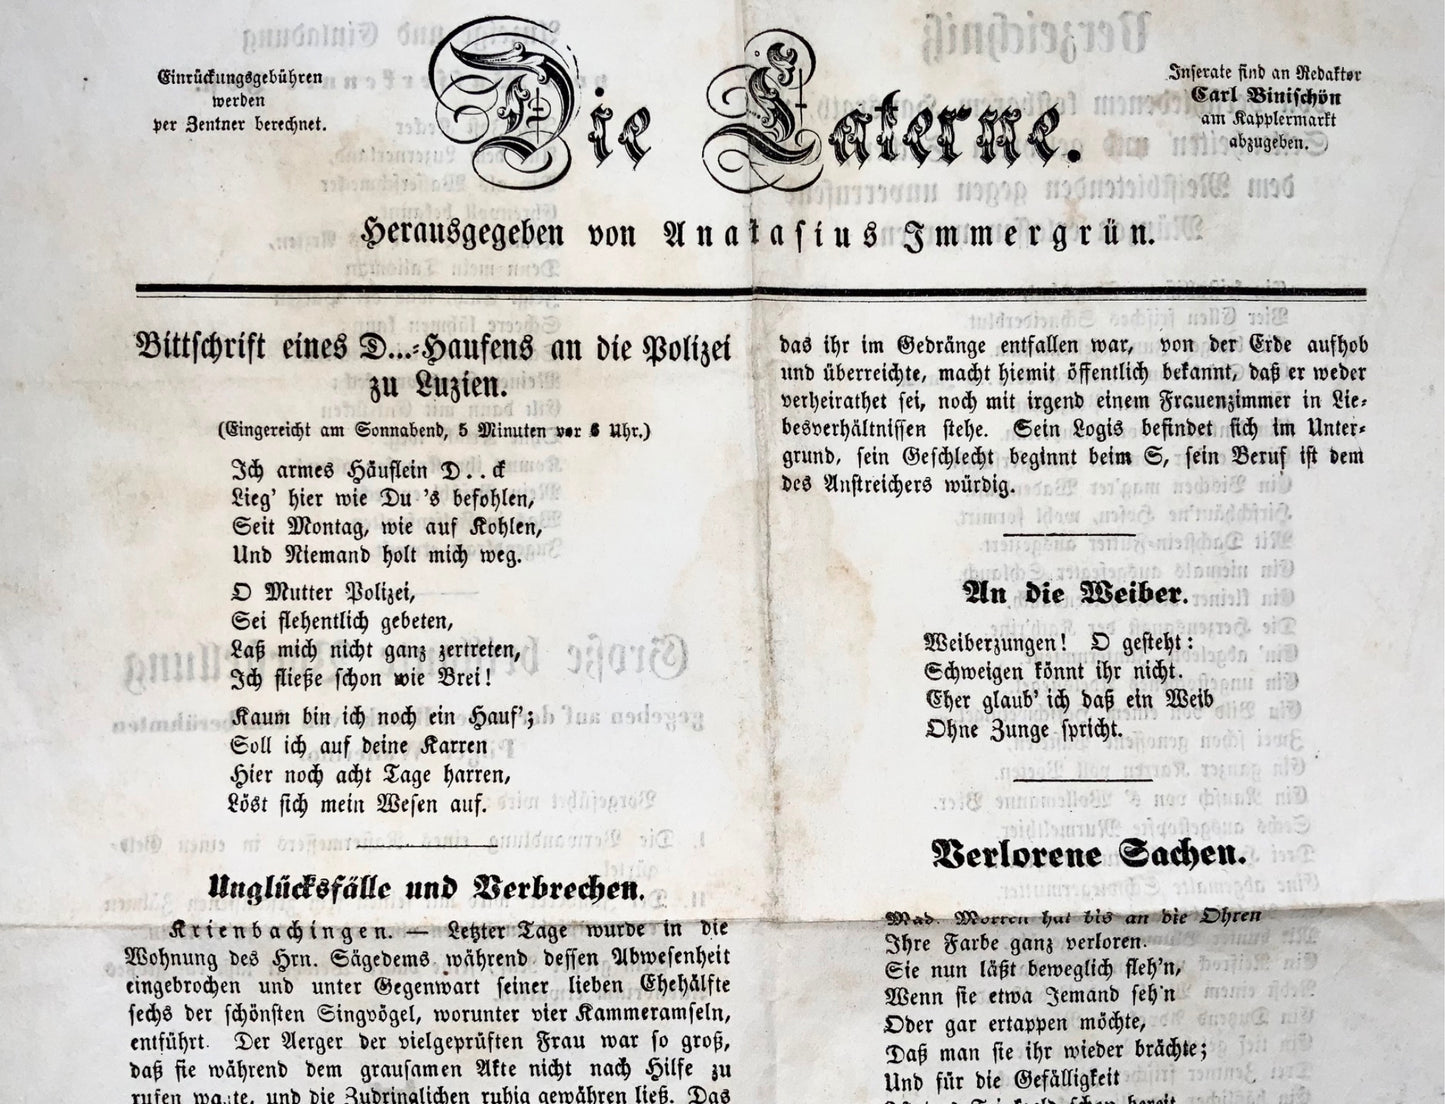 1871 Journal du Carnaval 'Die Laterne', Lucerne, Suisse